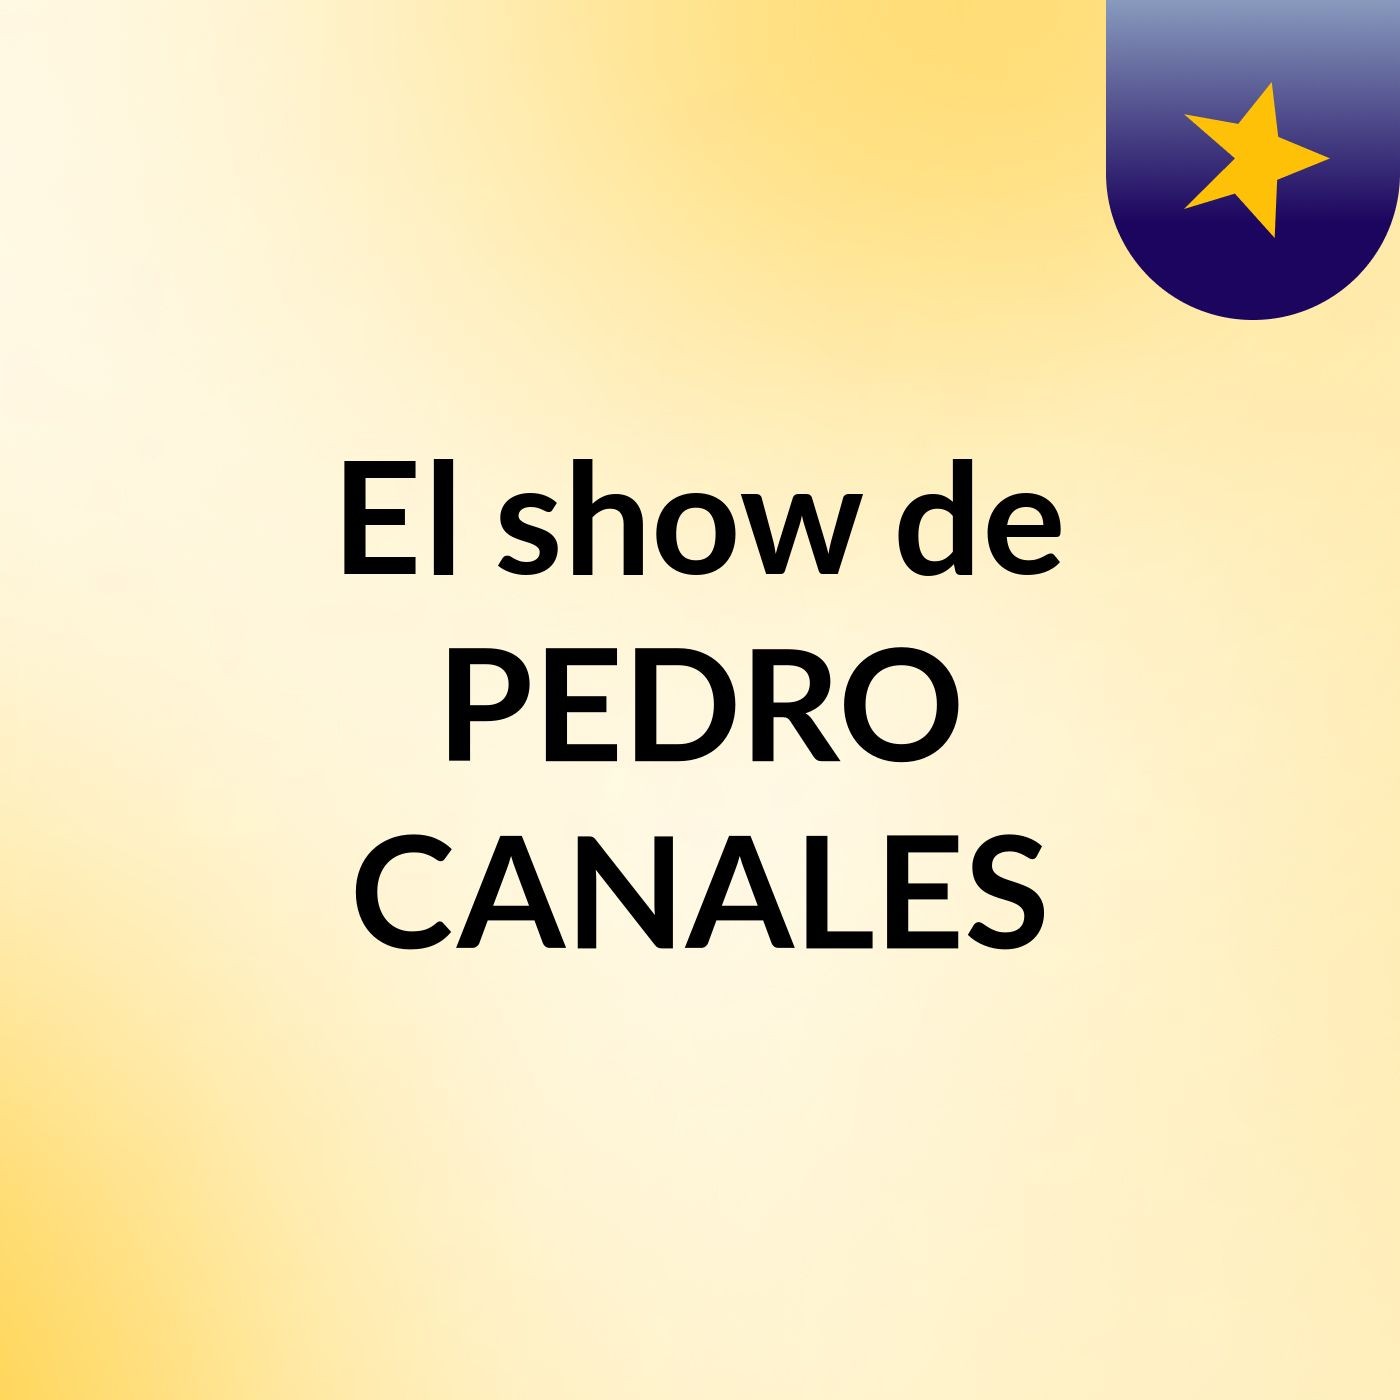 El show de PEDRO CANALES